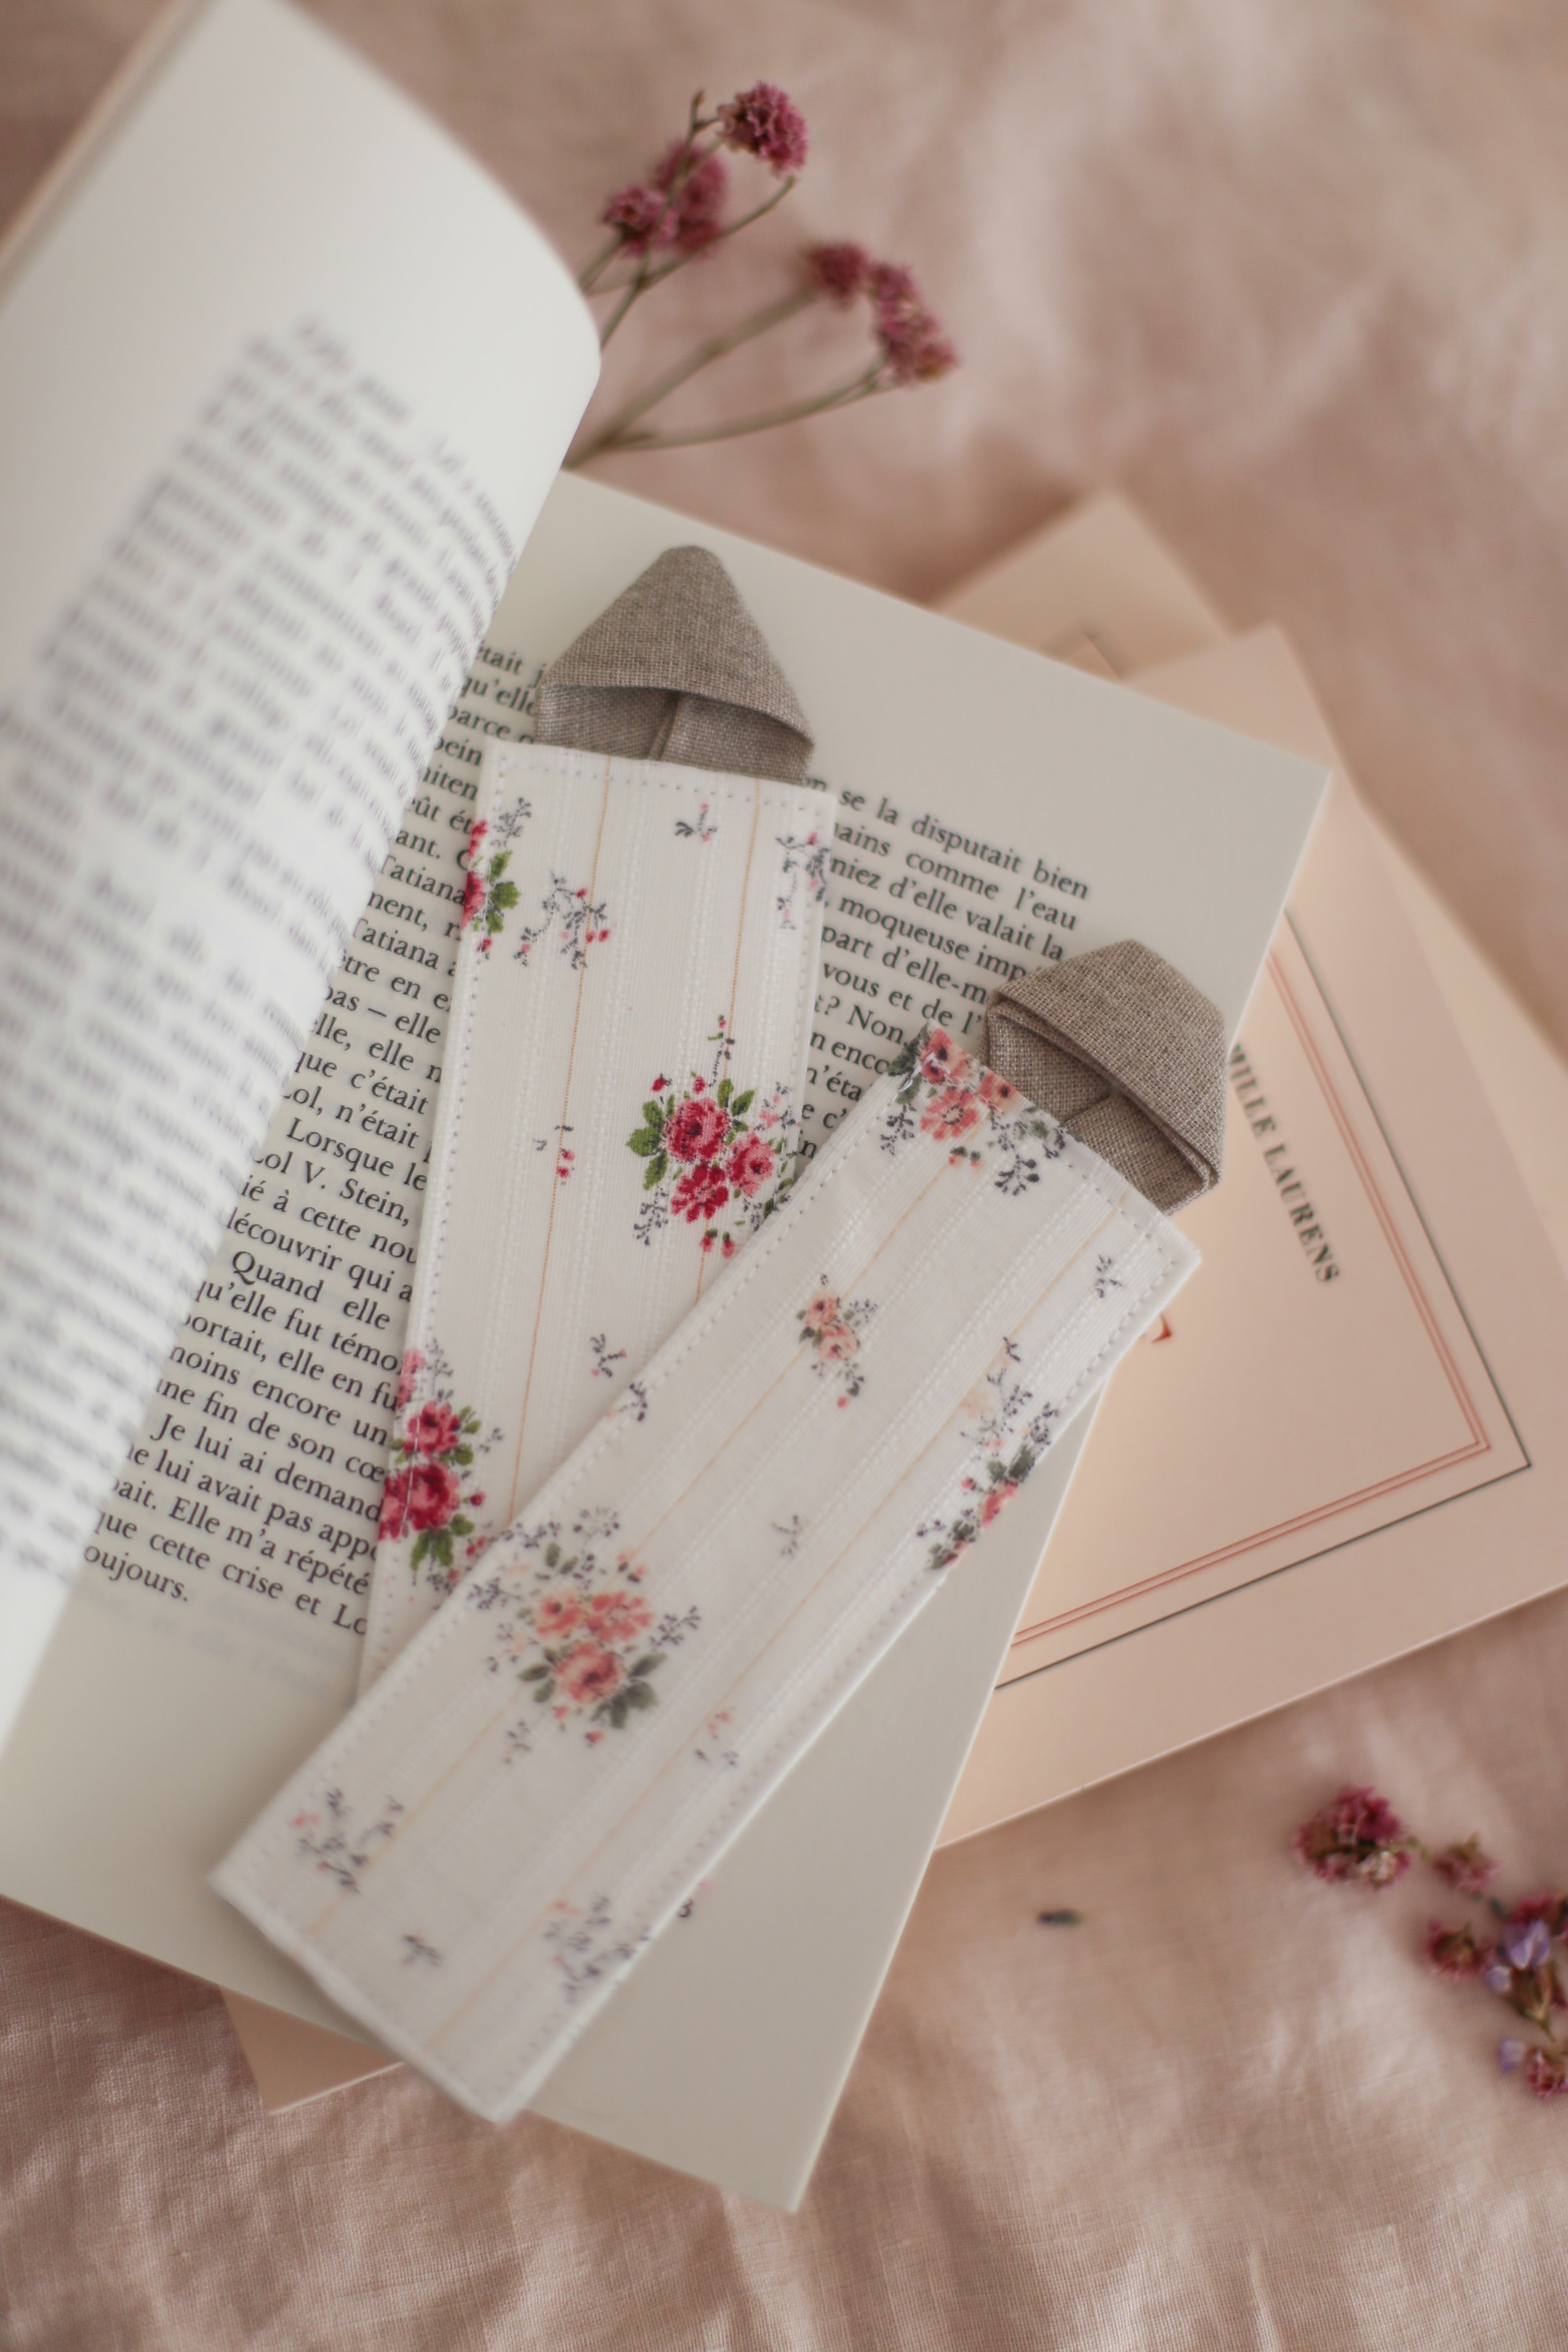 Bookmark "Pride and prejudices of Jane Austen"